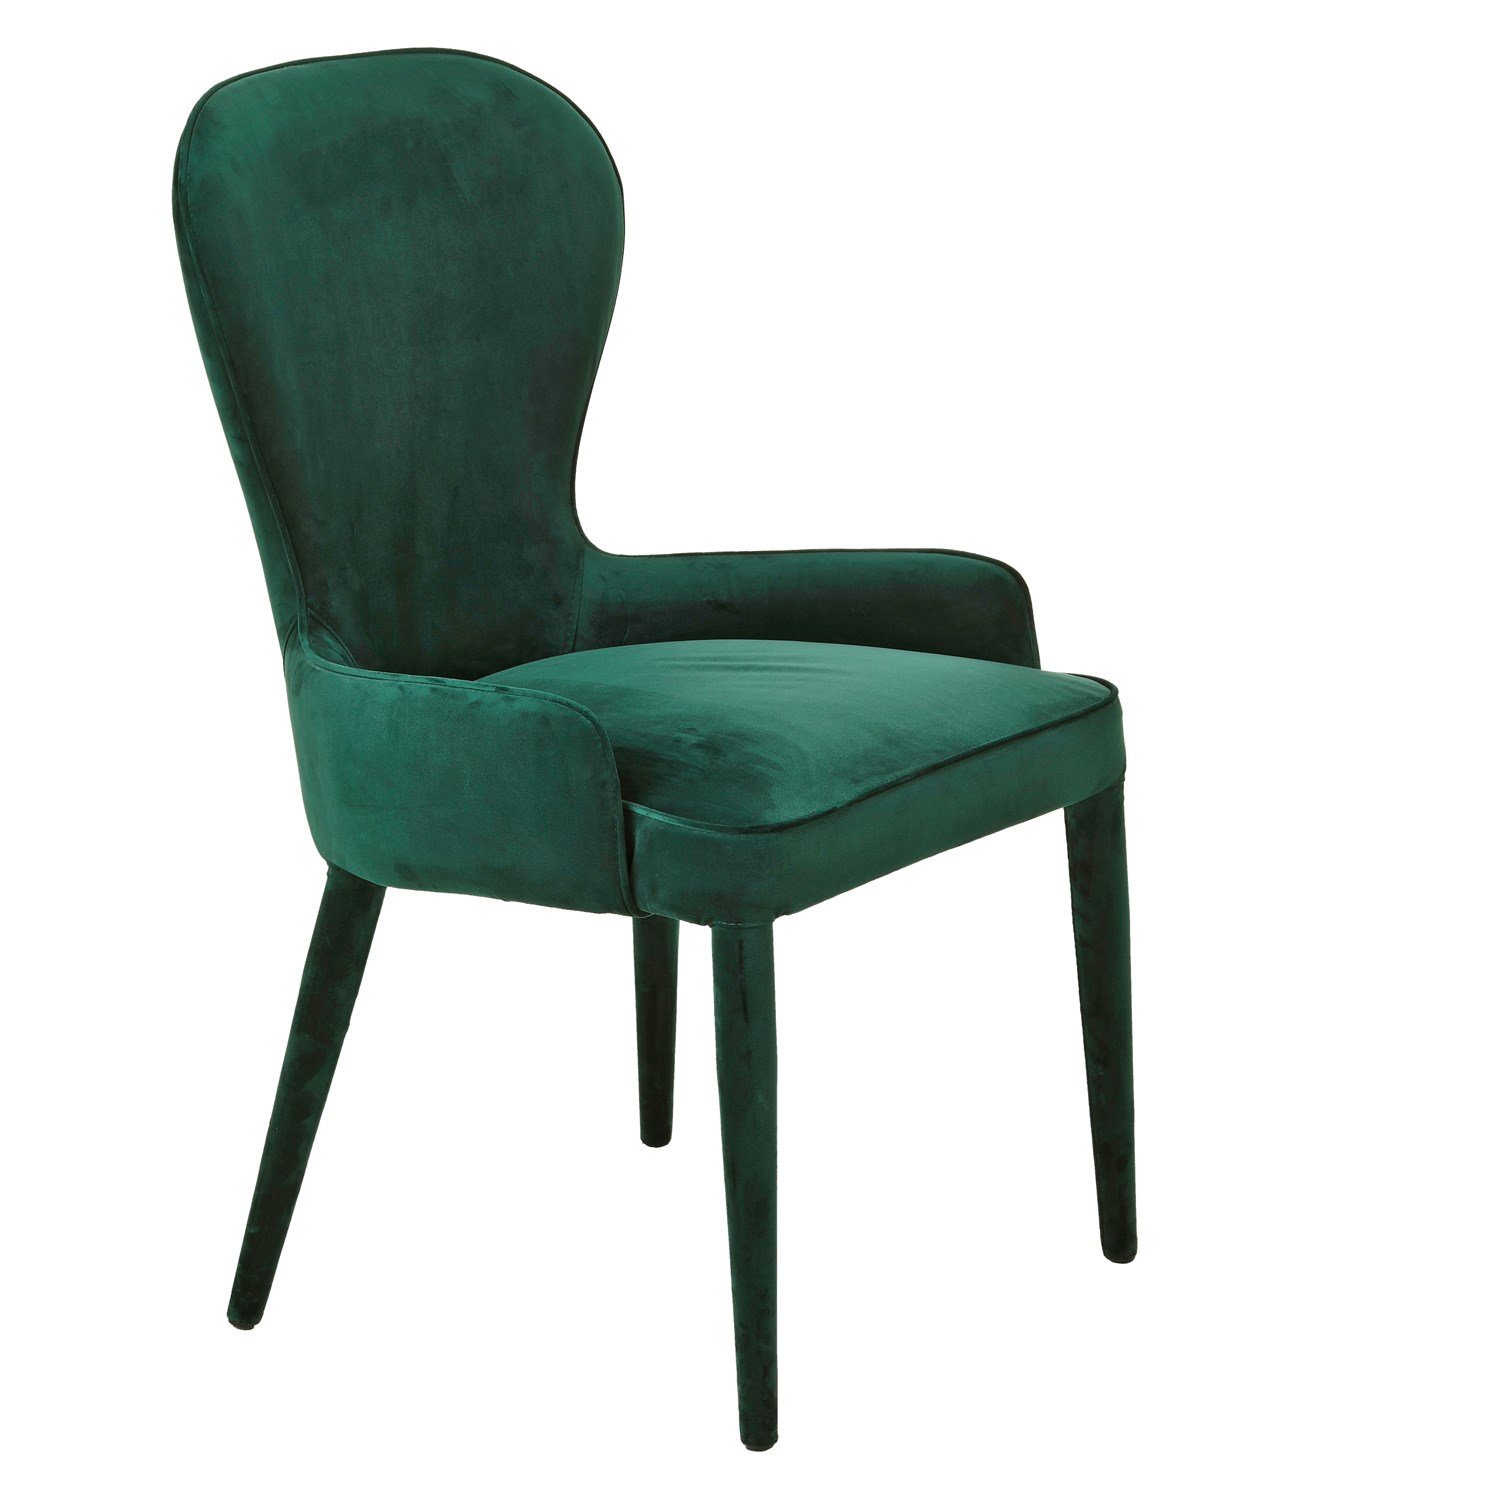 Стулья обеденные велюр. Pols potten стул. Изумрудные стулья. Стул мягкий зеленый. Стул кресло изумрудного цвета.